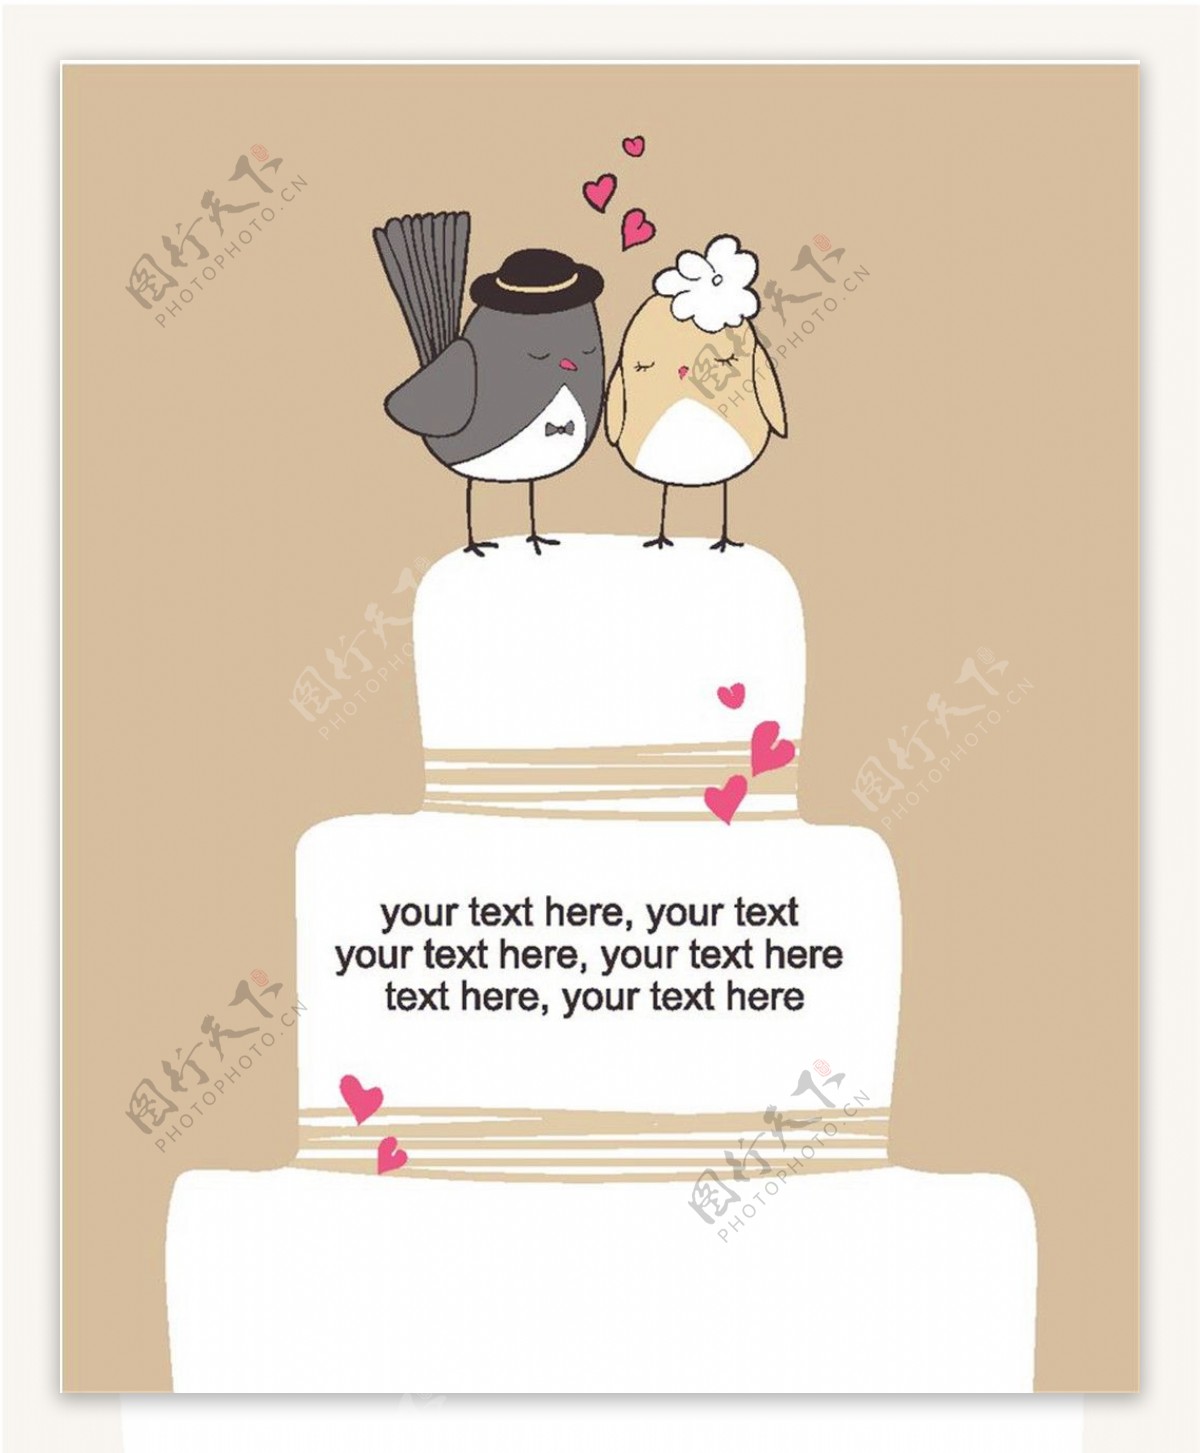 爱情鸟蛋糕婚礼请贴图片